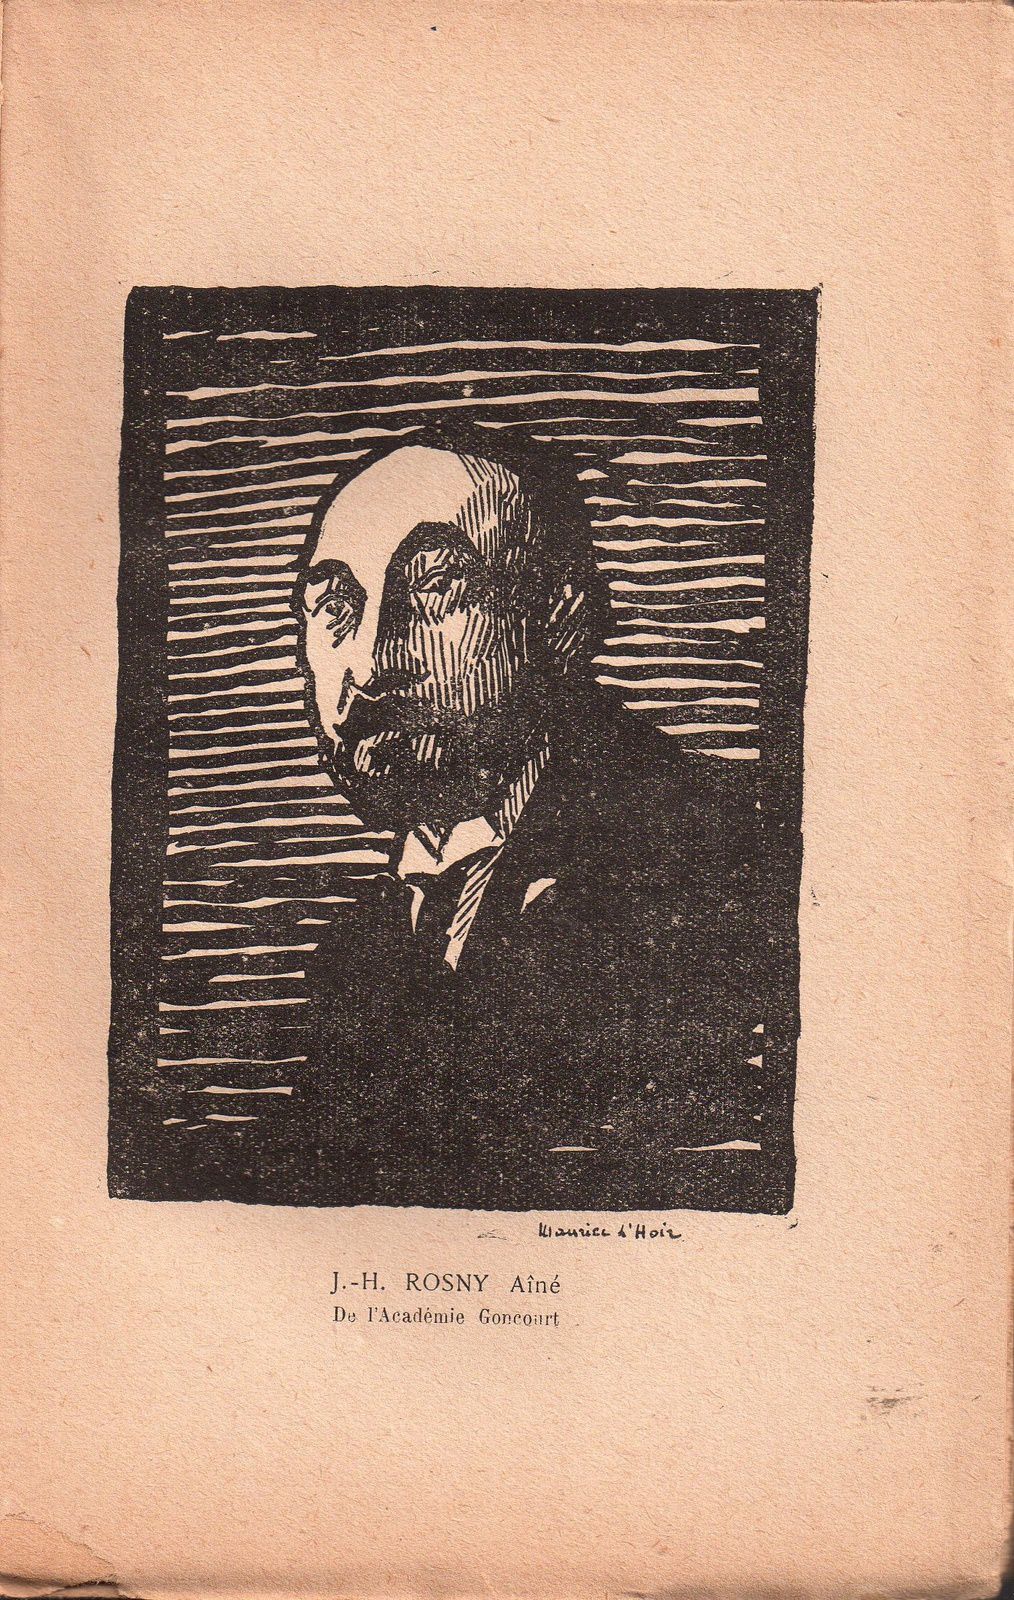 J.-H. Rosny aîné "Les Rafales" (Baudinière - 1923)